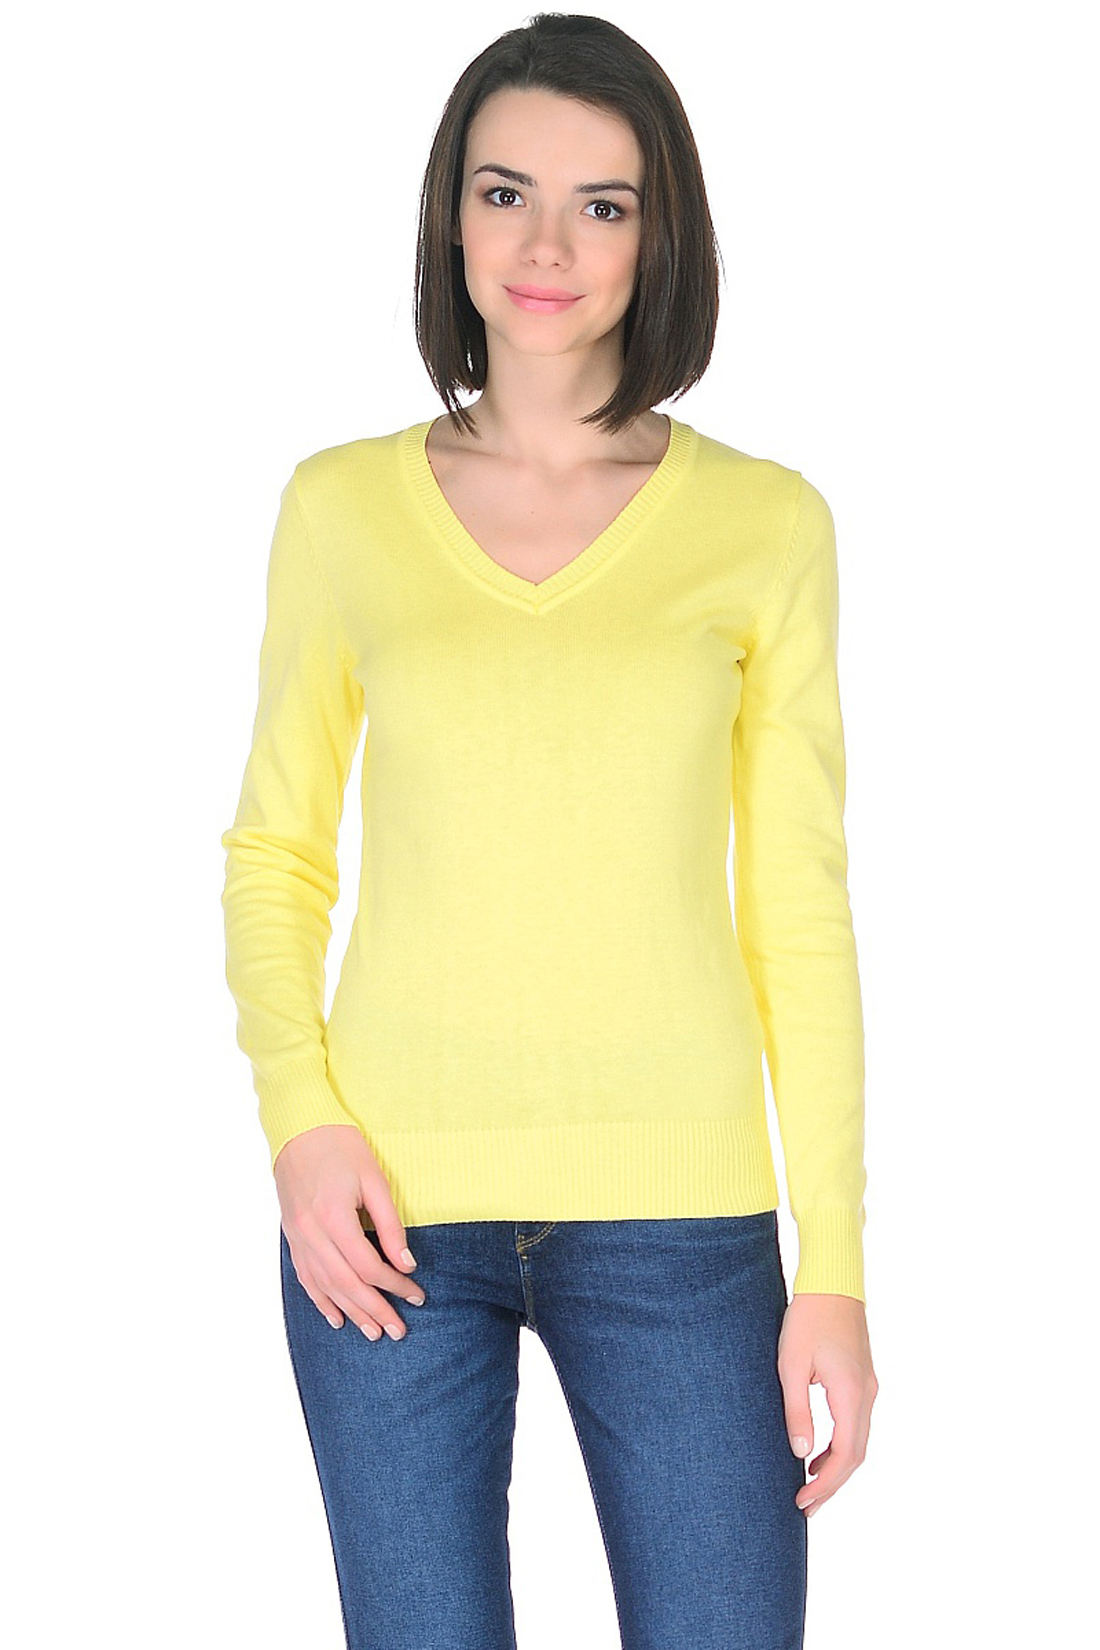 Базовый пуловер (арт. baon B138201), размер XL, цвет желтый Базовый пуловер (арт. baon B138201) - фото 1